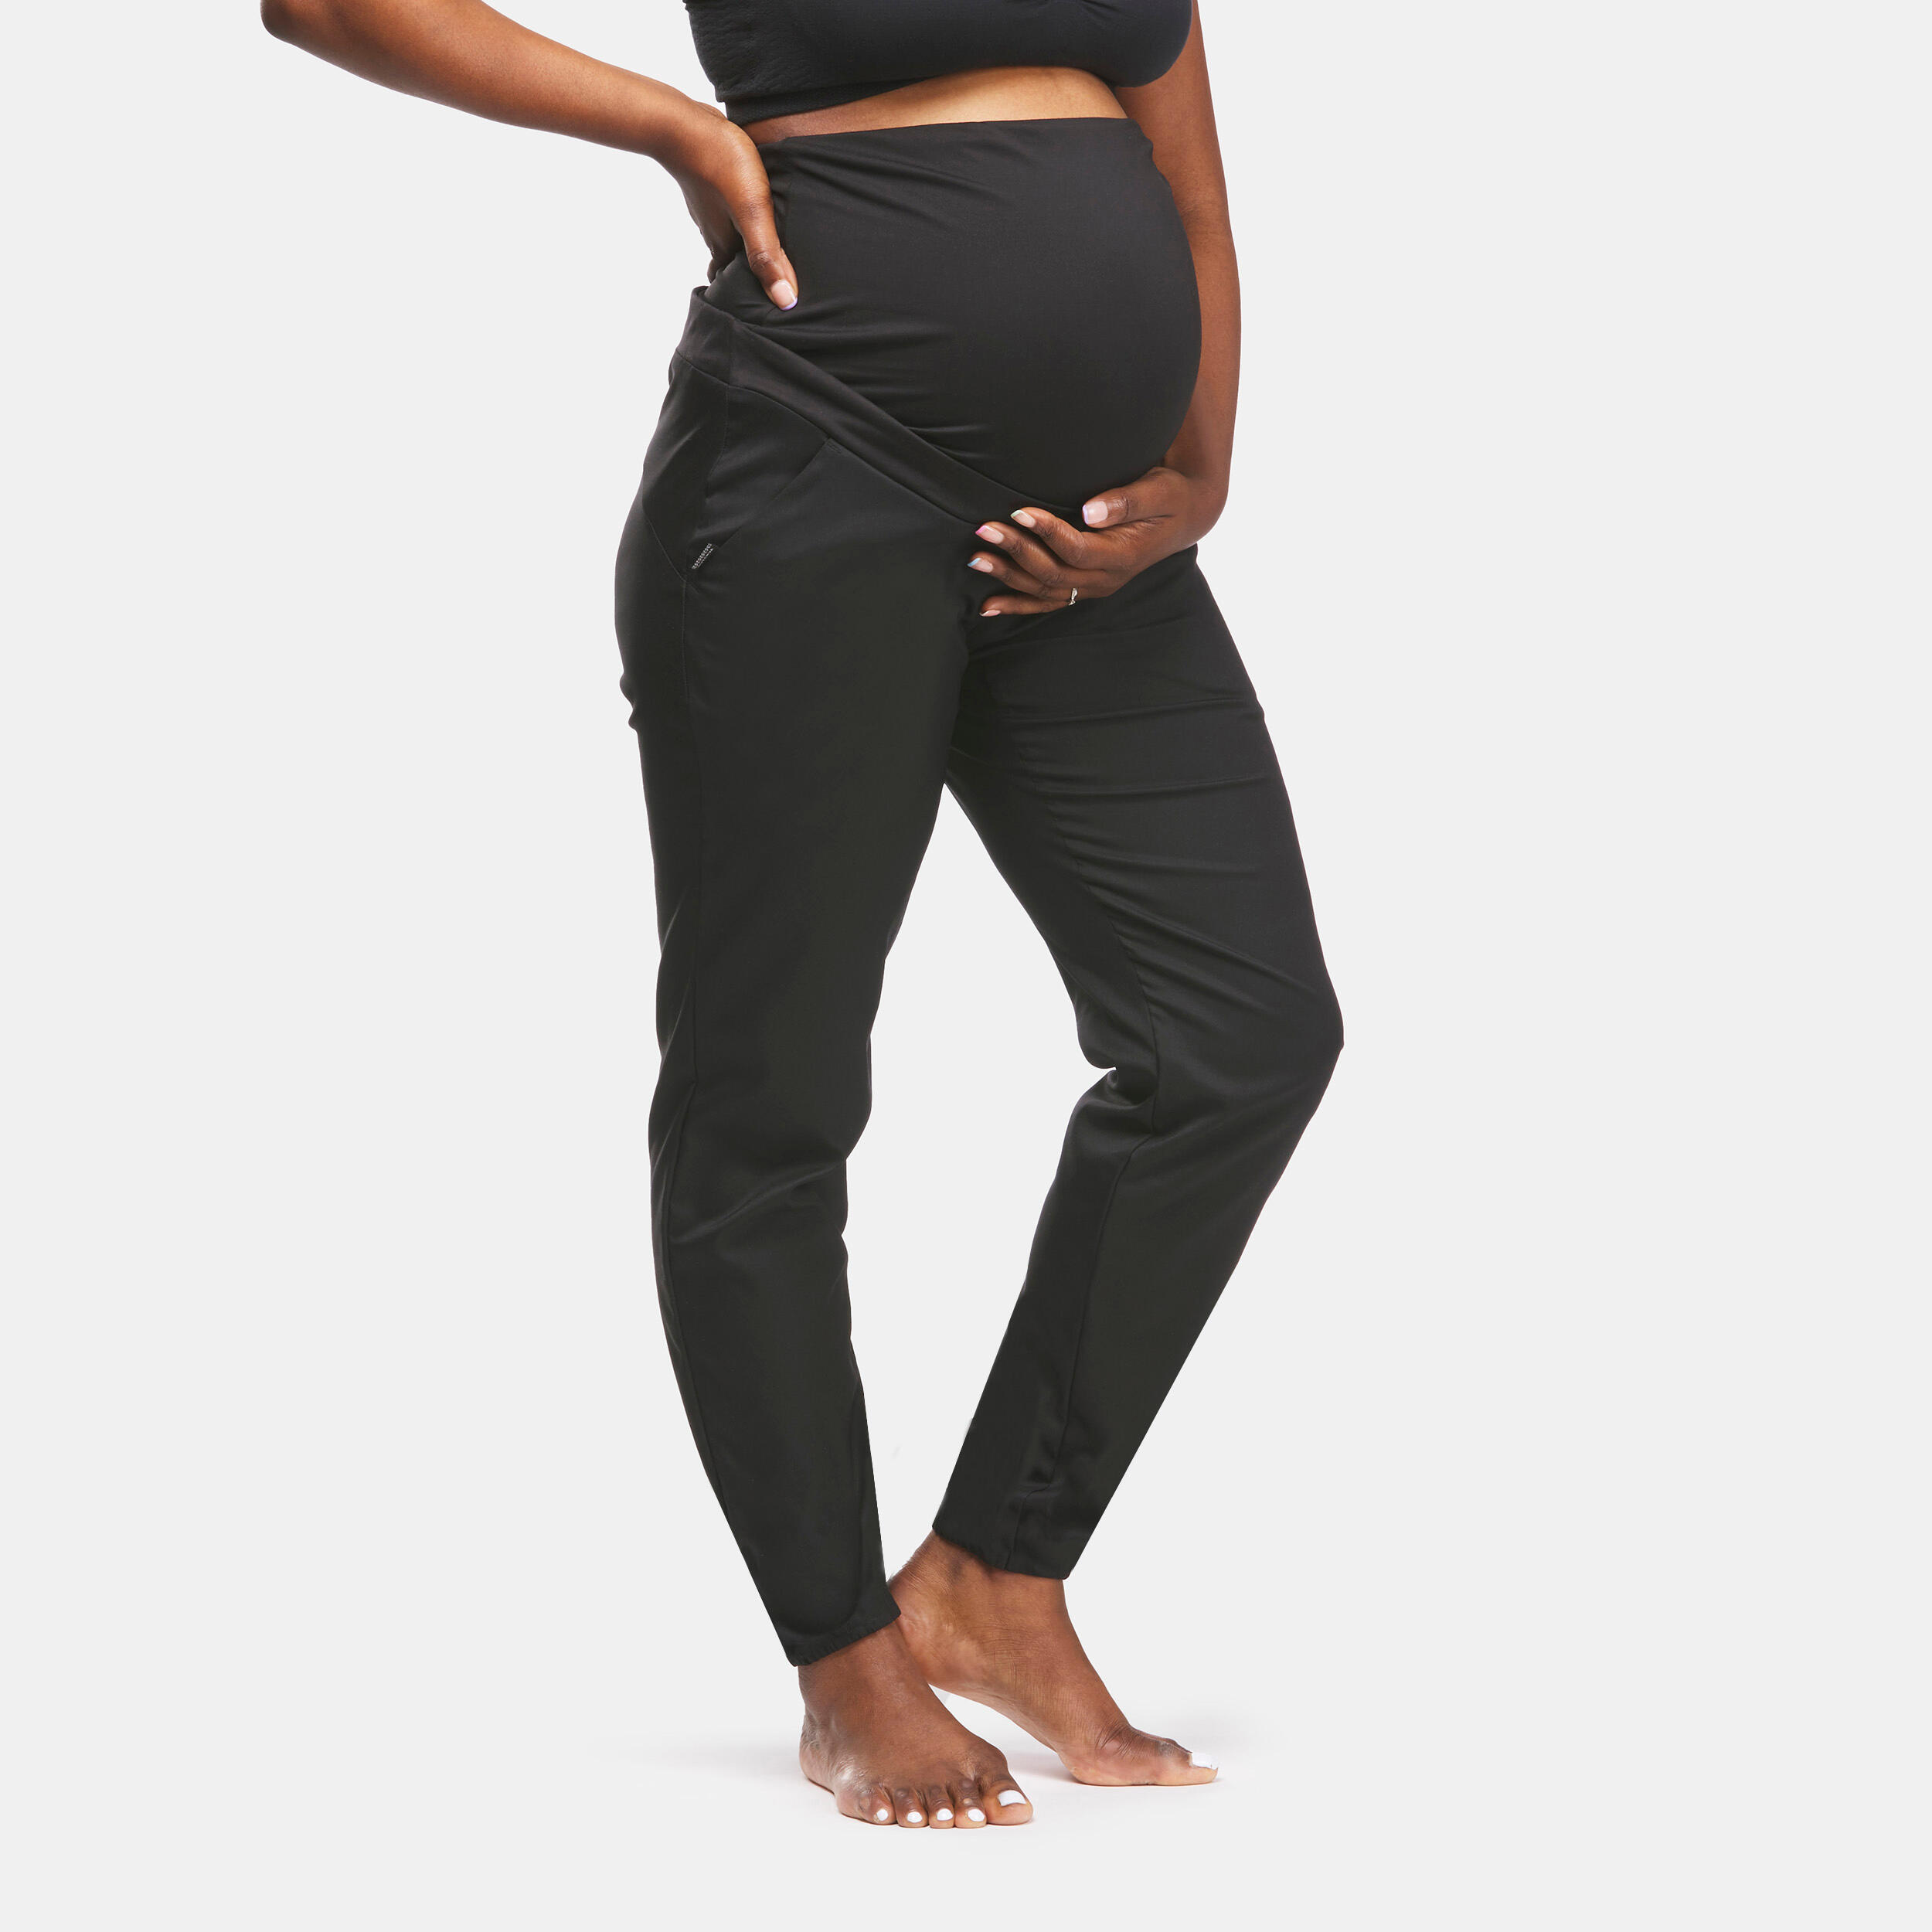 Pantalon Drumeție în natură Femei însărcinate Negru La Oferta Online decathlon imagine La Oferta Online